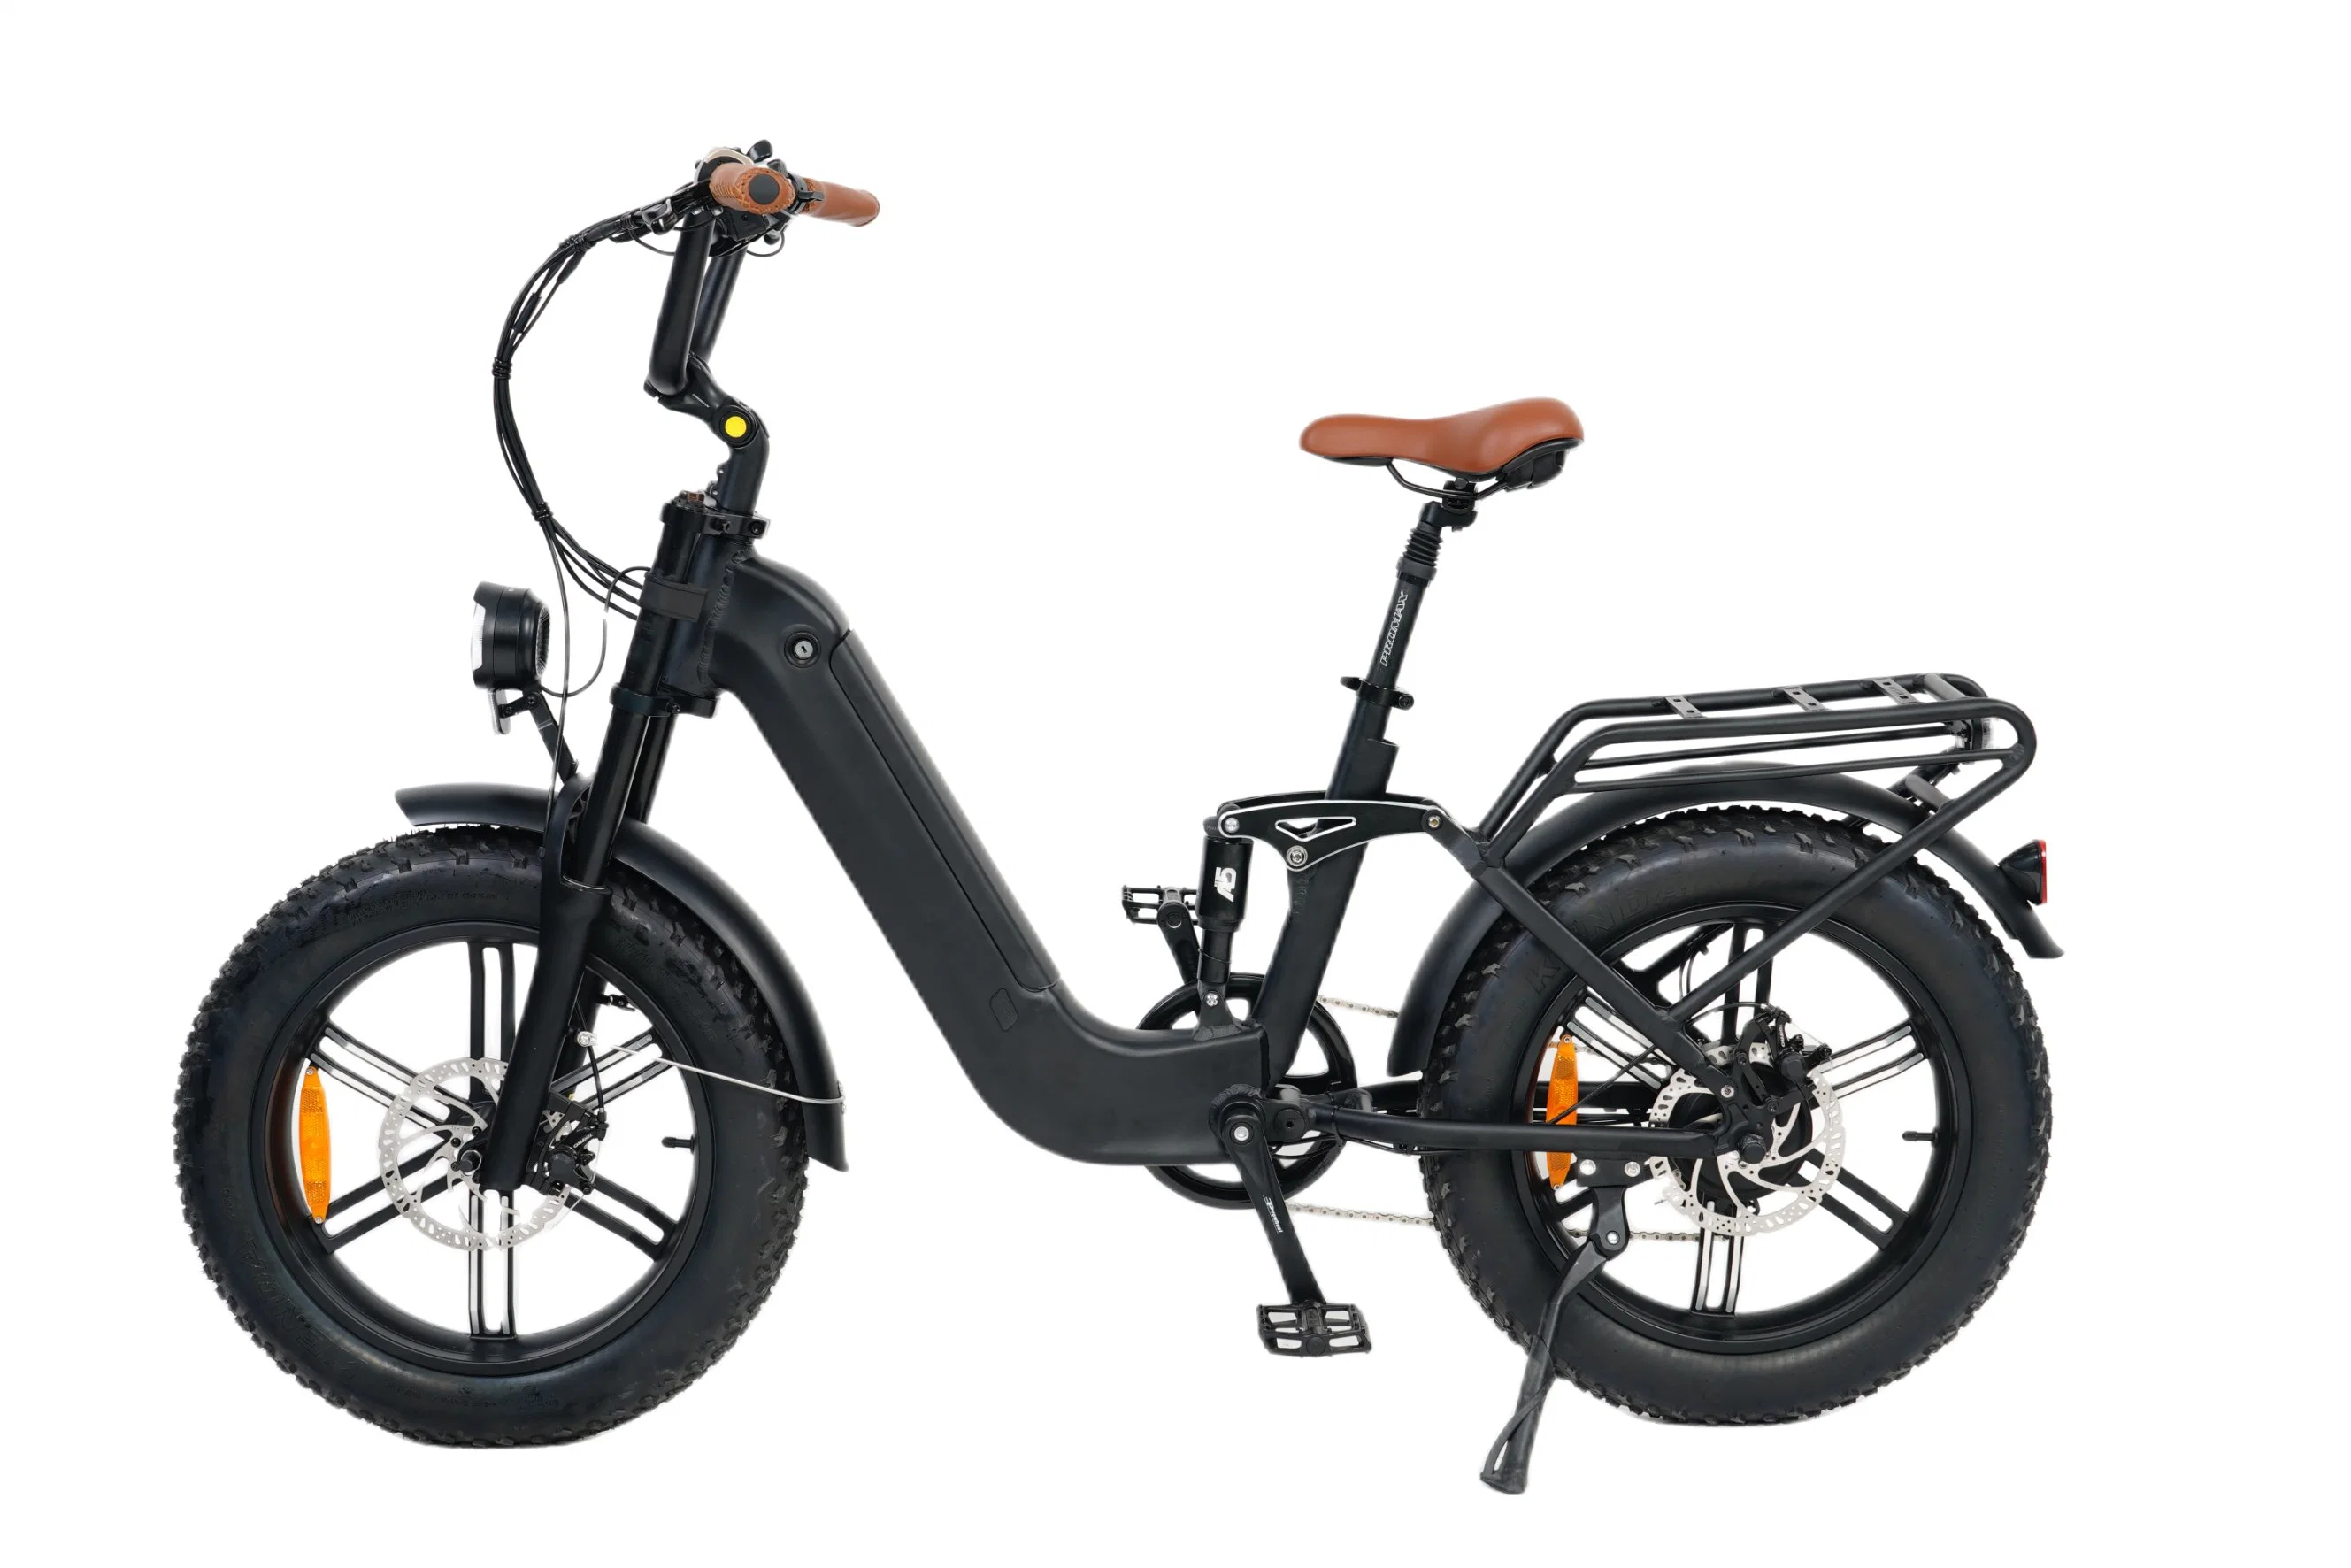 دراجة كهربائية بإطارات سميكة وبطارية مخفية بقوة 750 واط وسعة 48 فولت، مع تعليق كامل ودورة كهربائية جبلية.